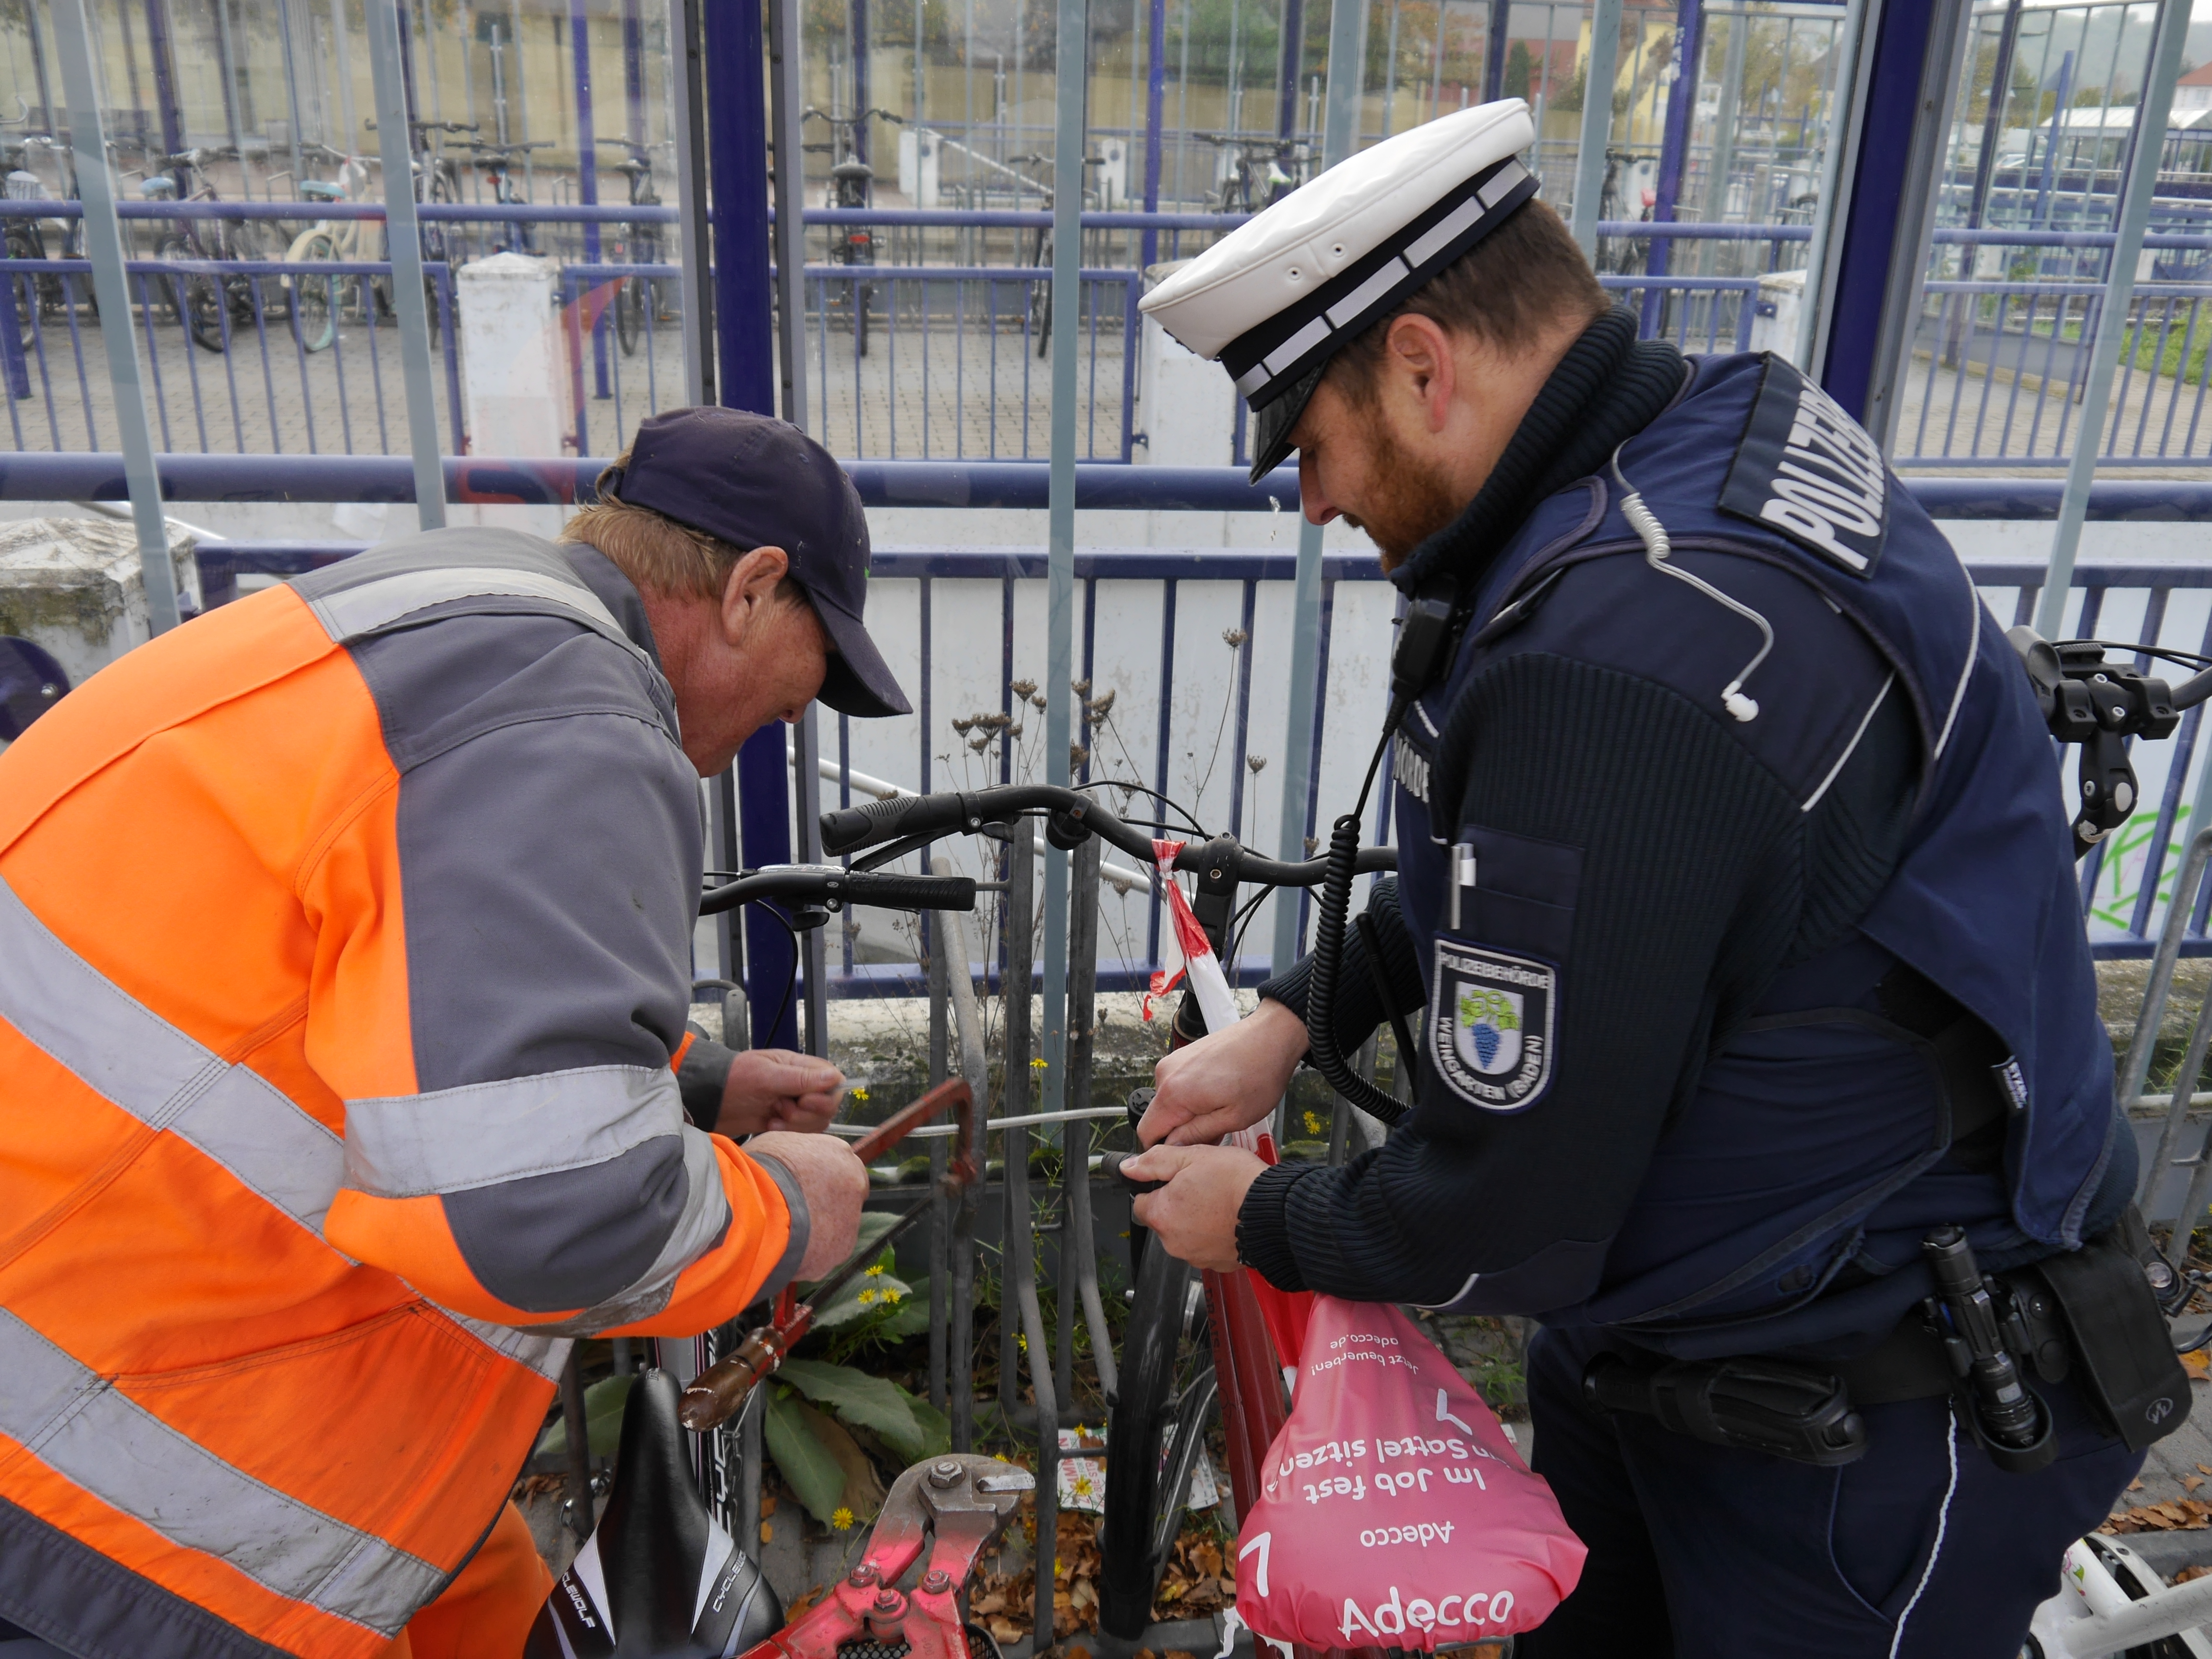  Schrotträder wurden bei einer gemeinsamen Aktion von Bauhof und Polizei in den Bauhof gebracht 